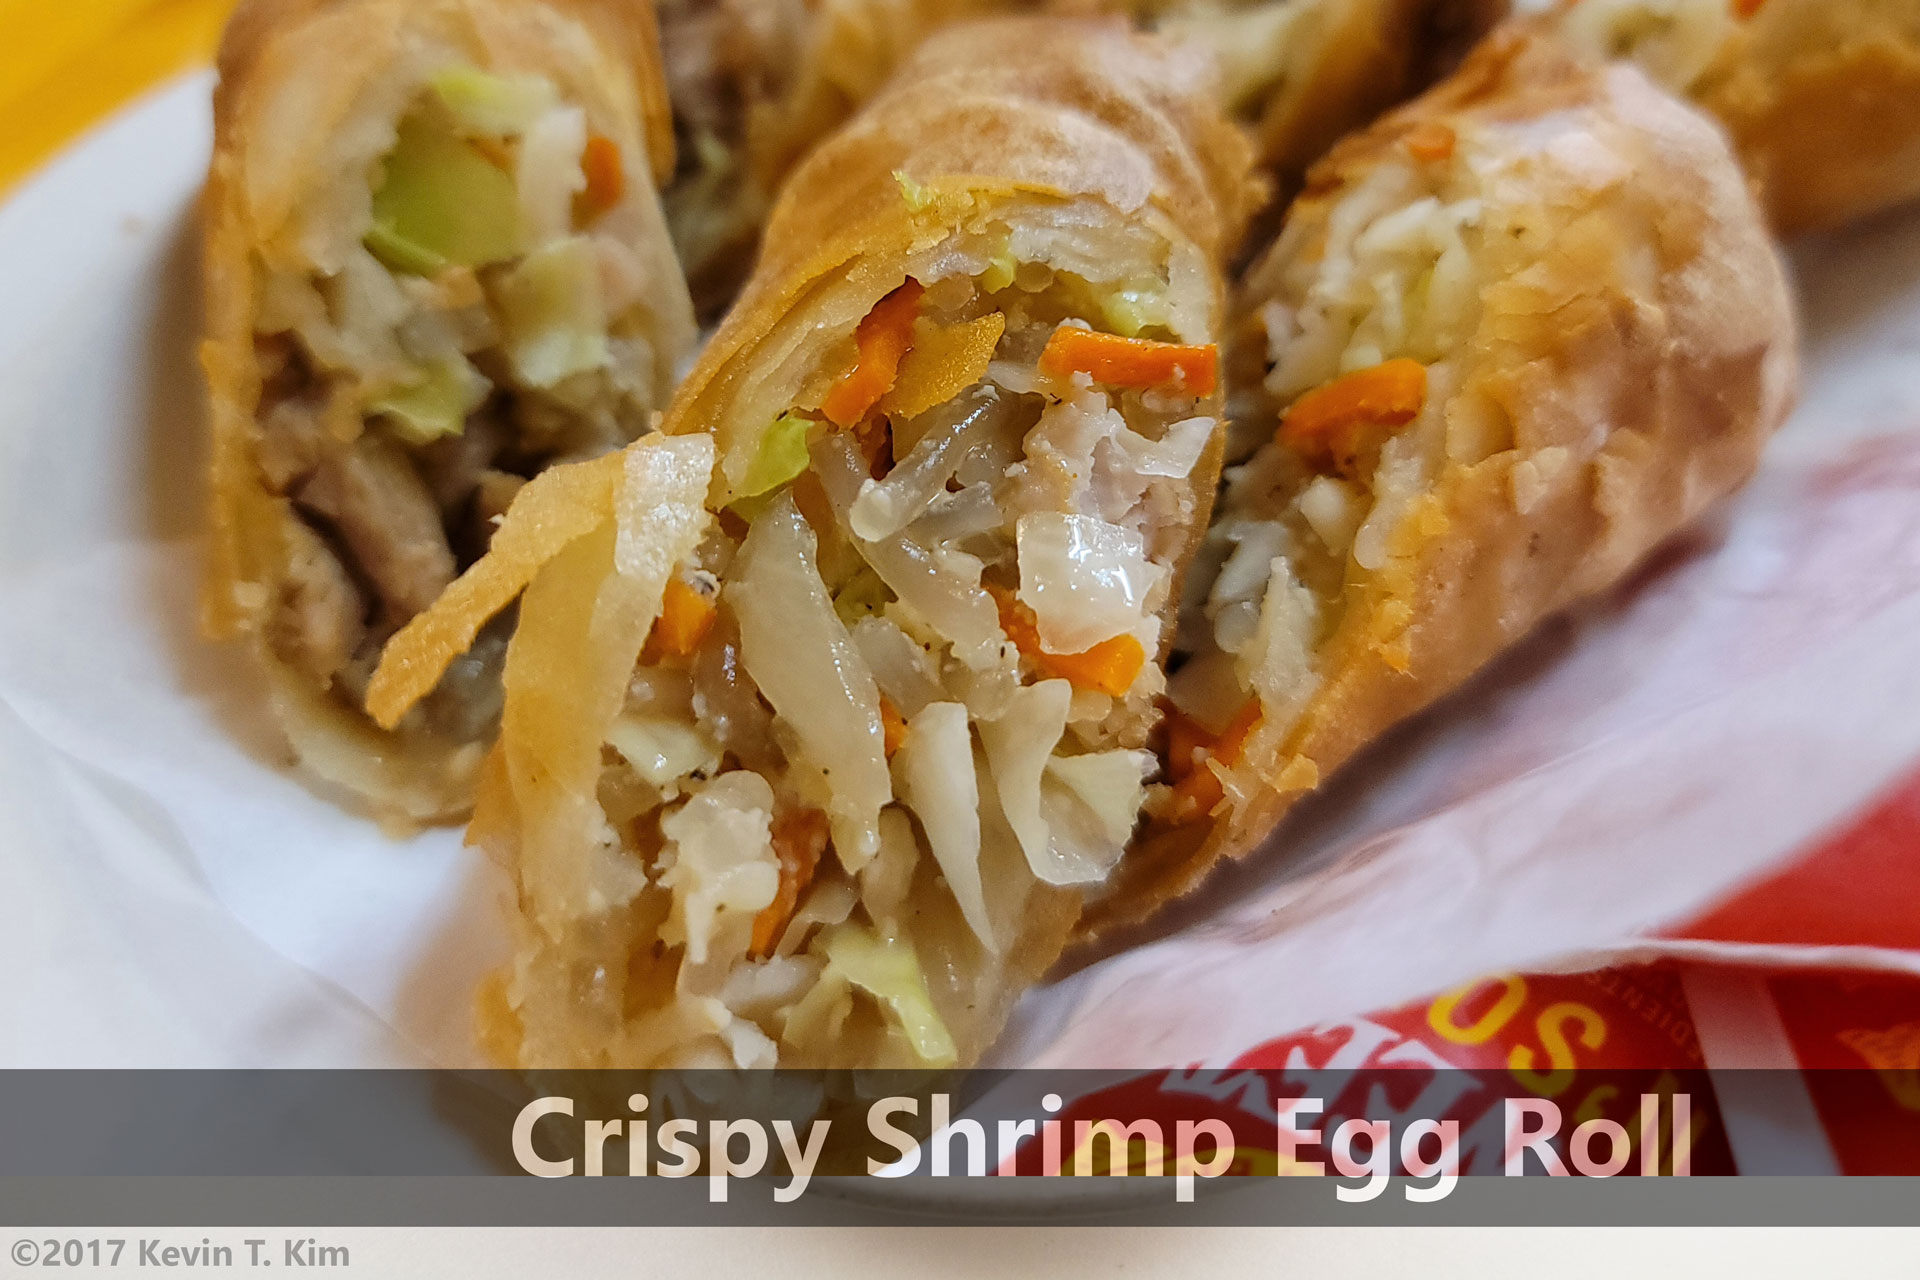 https://www.toshiteriyaki.com/renton/uploads/2020/10/crispy-shrimp-egg-roll.jpg